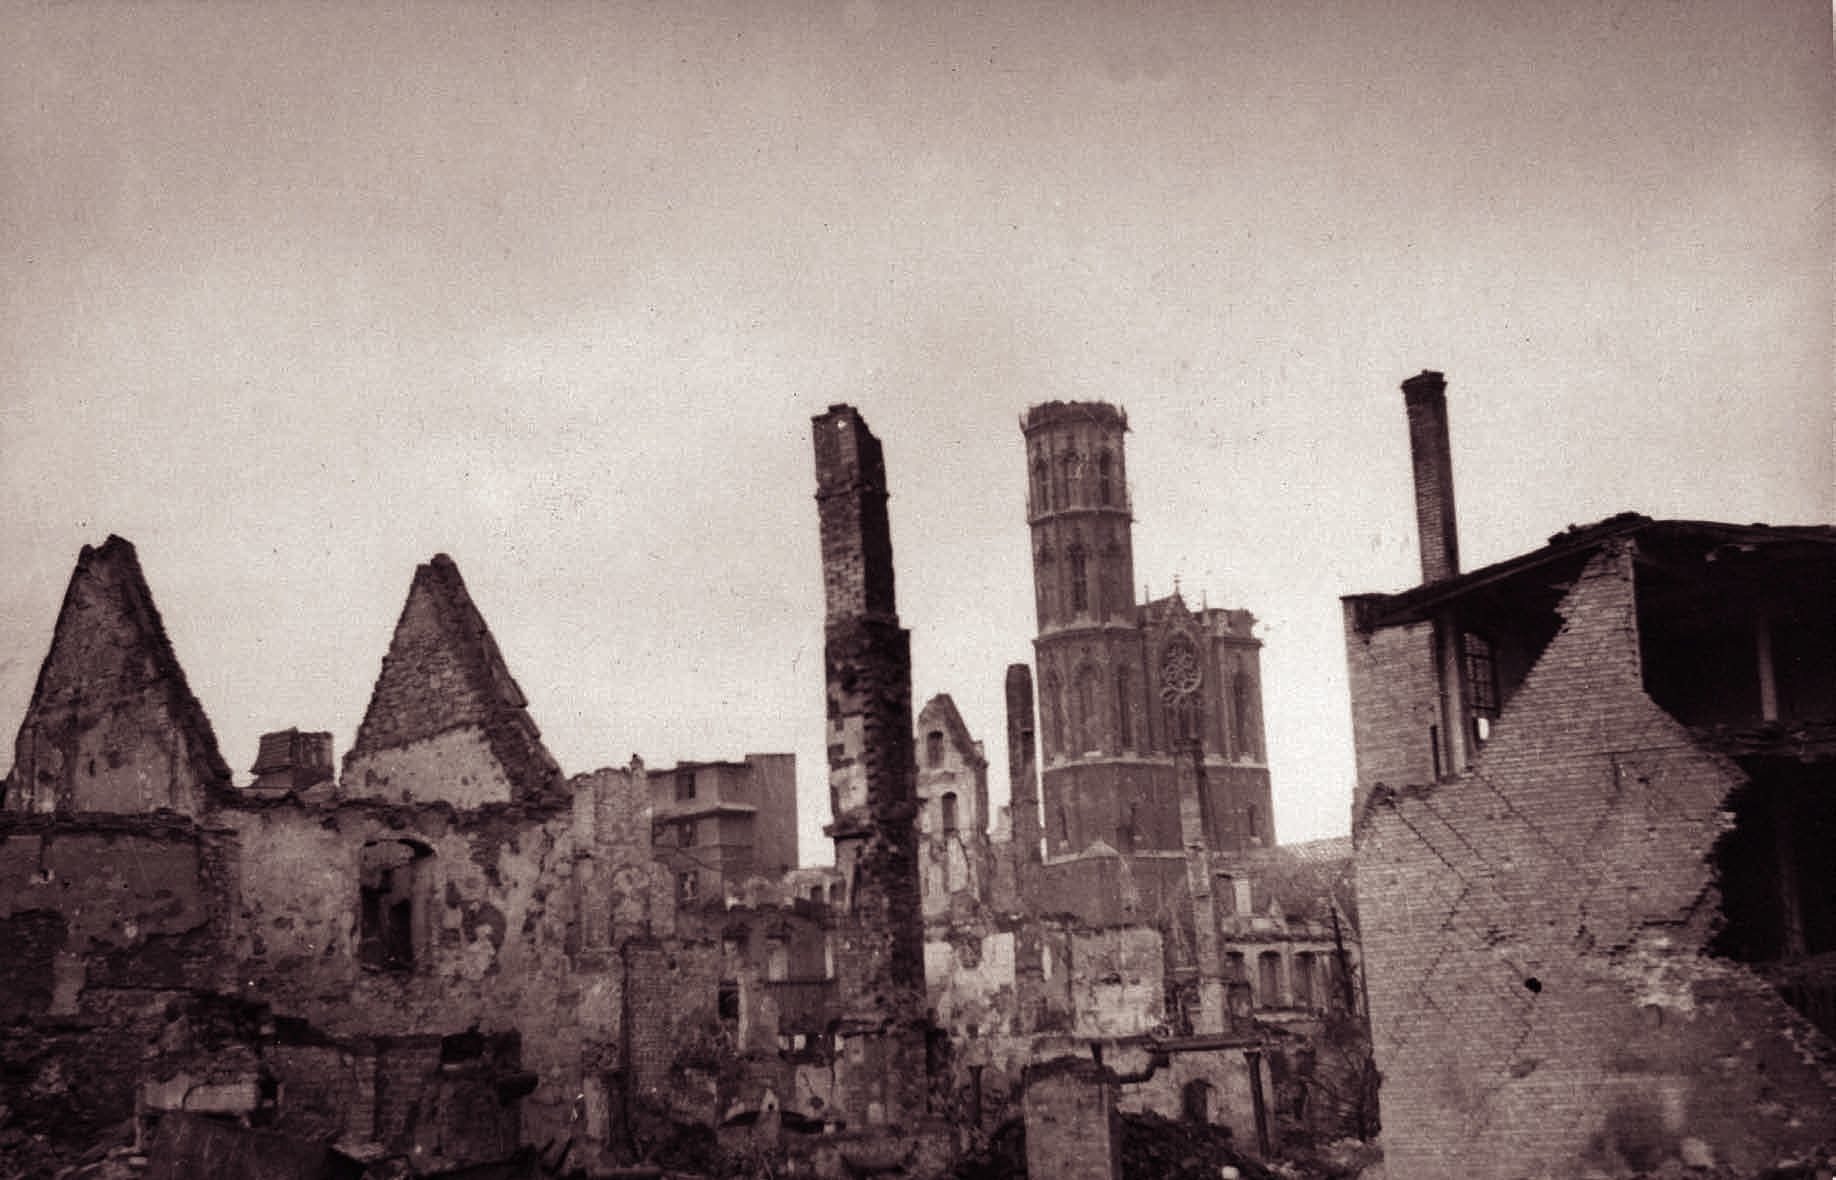 Die Kemenate Hagenbrücke 5 in der zerstörten Stadt 1945. Blick von Nordosten, im Hintergrund die beschädigte Kirche St. Andreas. (Wird bei Klick vergrößert)